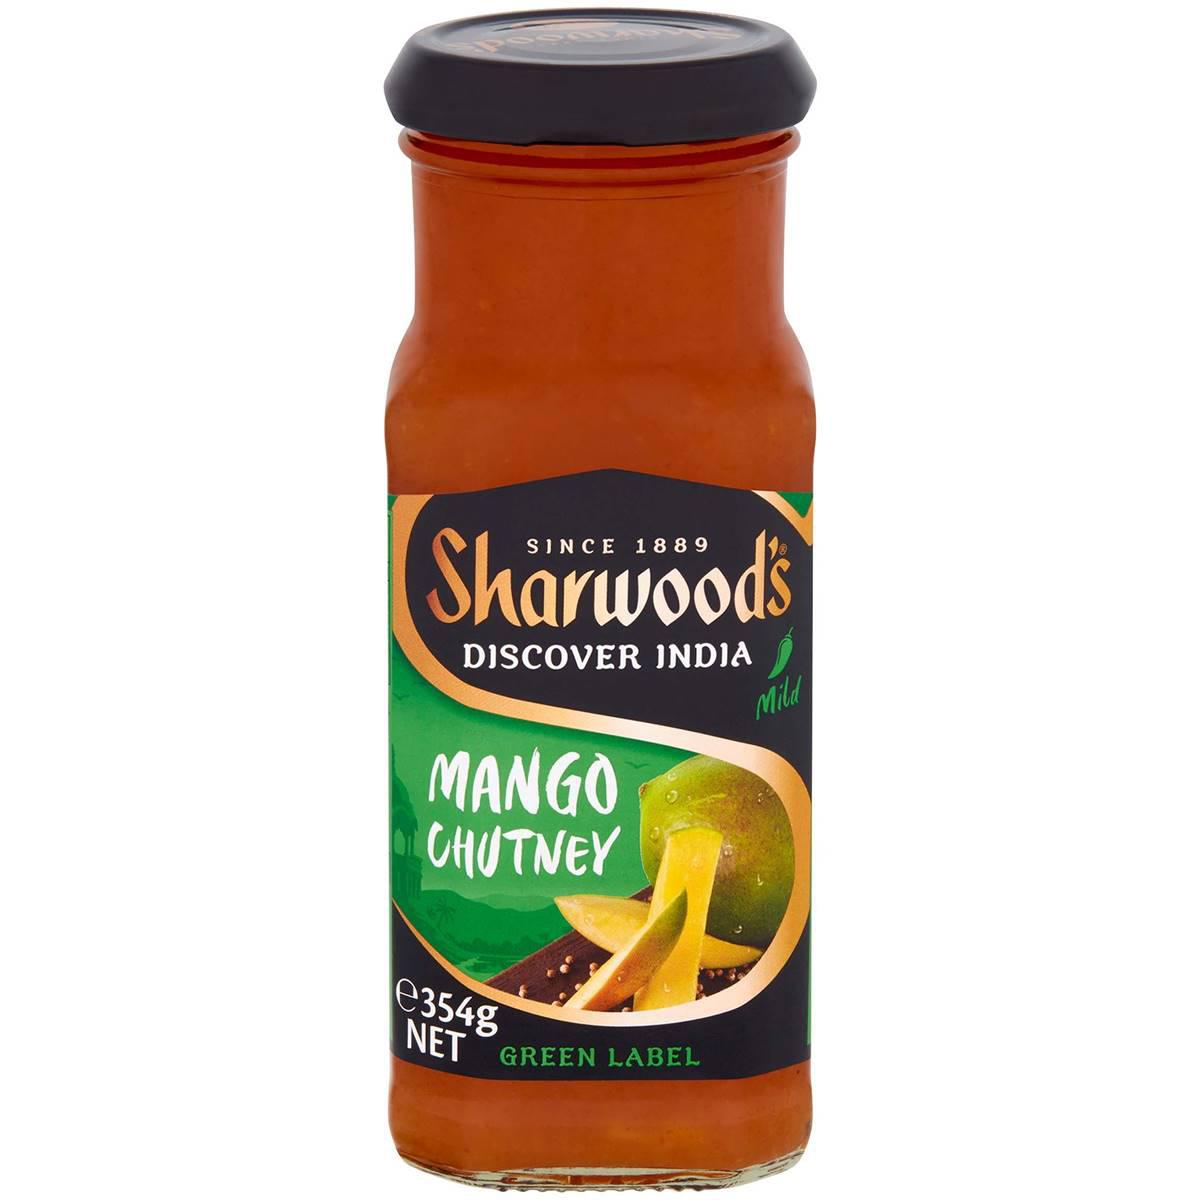 Sharwood's Mango Chutney 354g